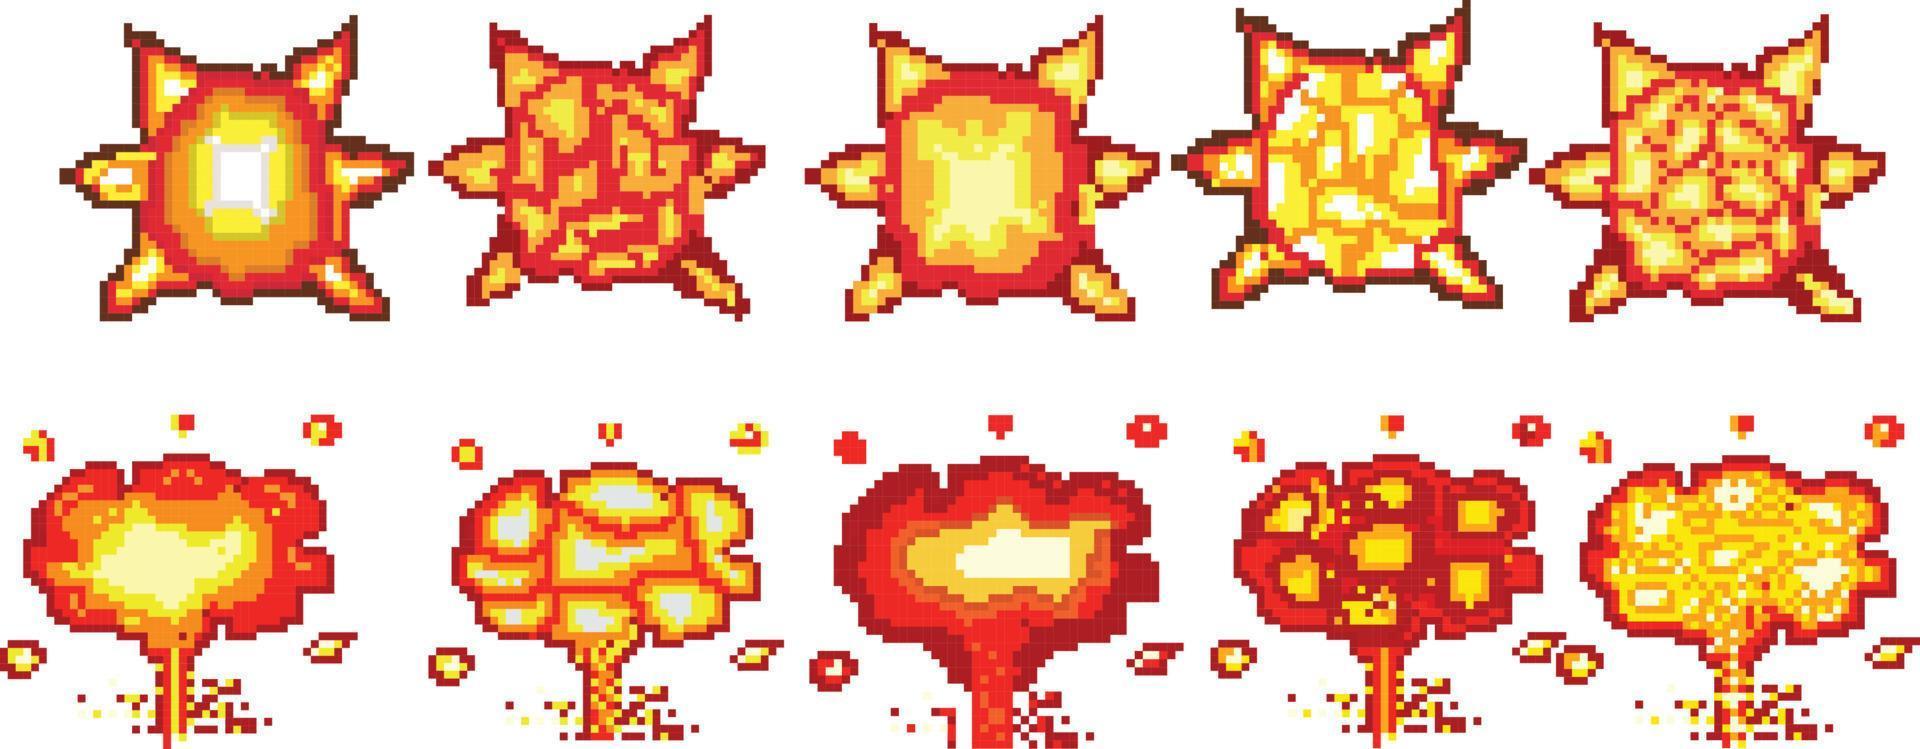 Druckexplosions-Pixelkunst, Videospiel-Explosionsanimation Flamme-Pixelkunst. vektor